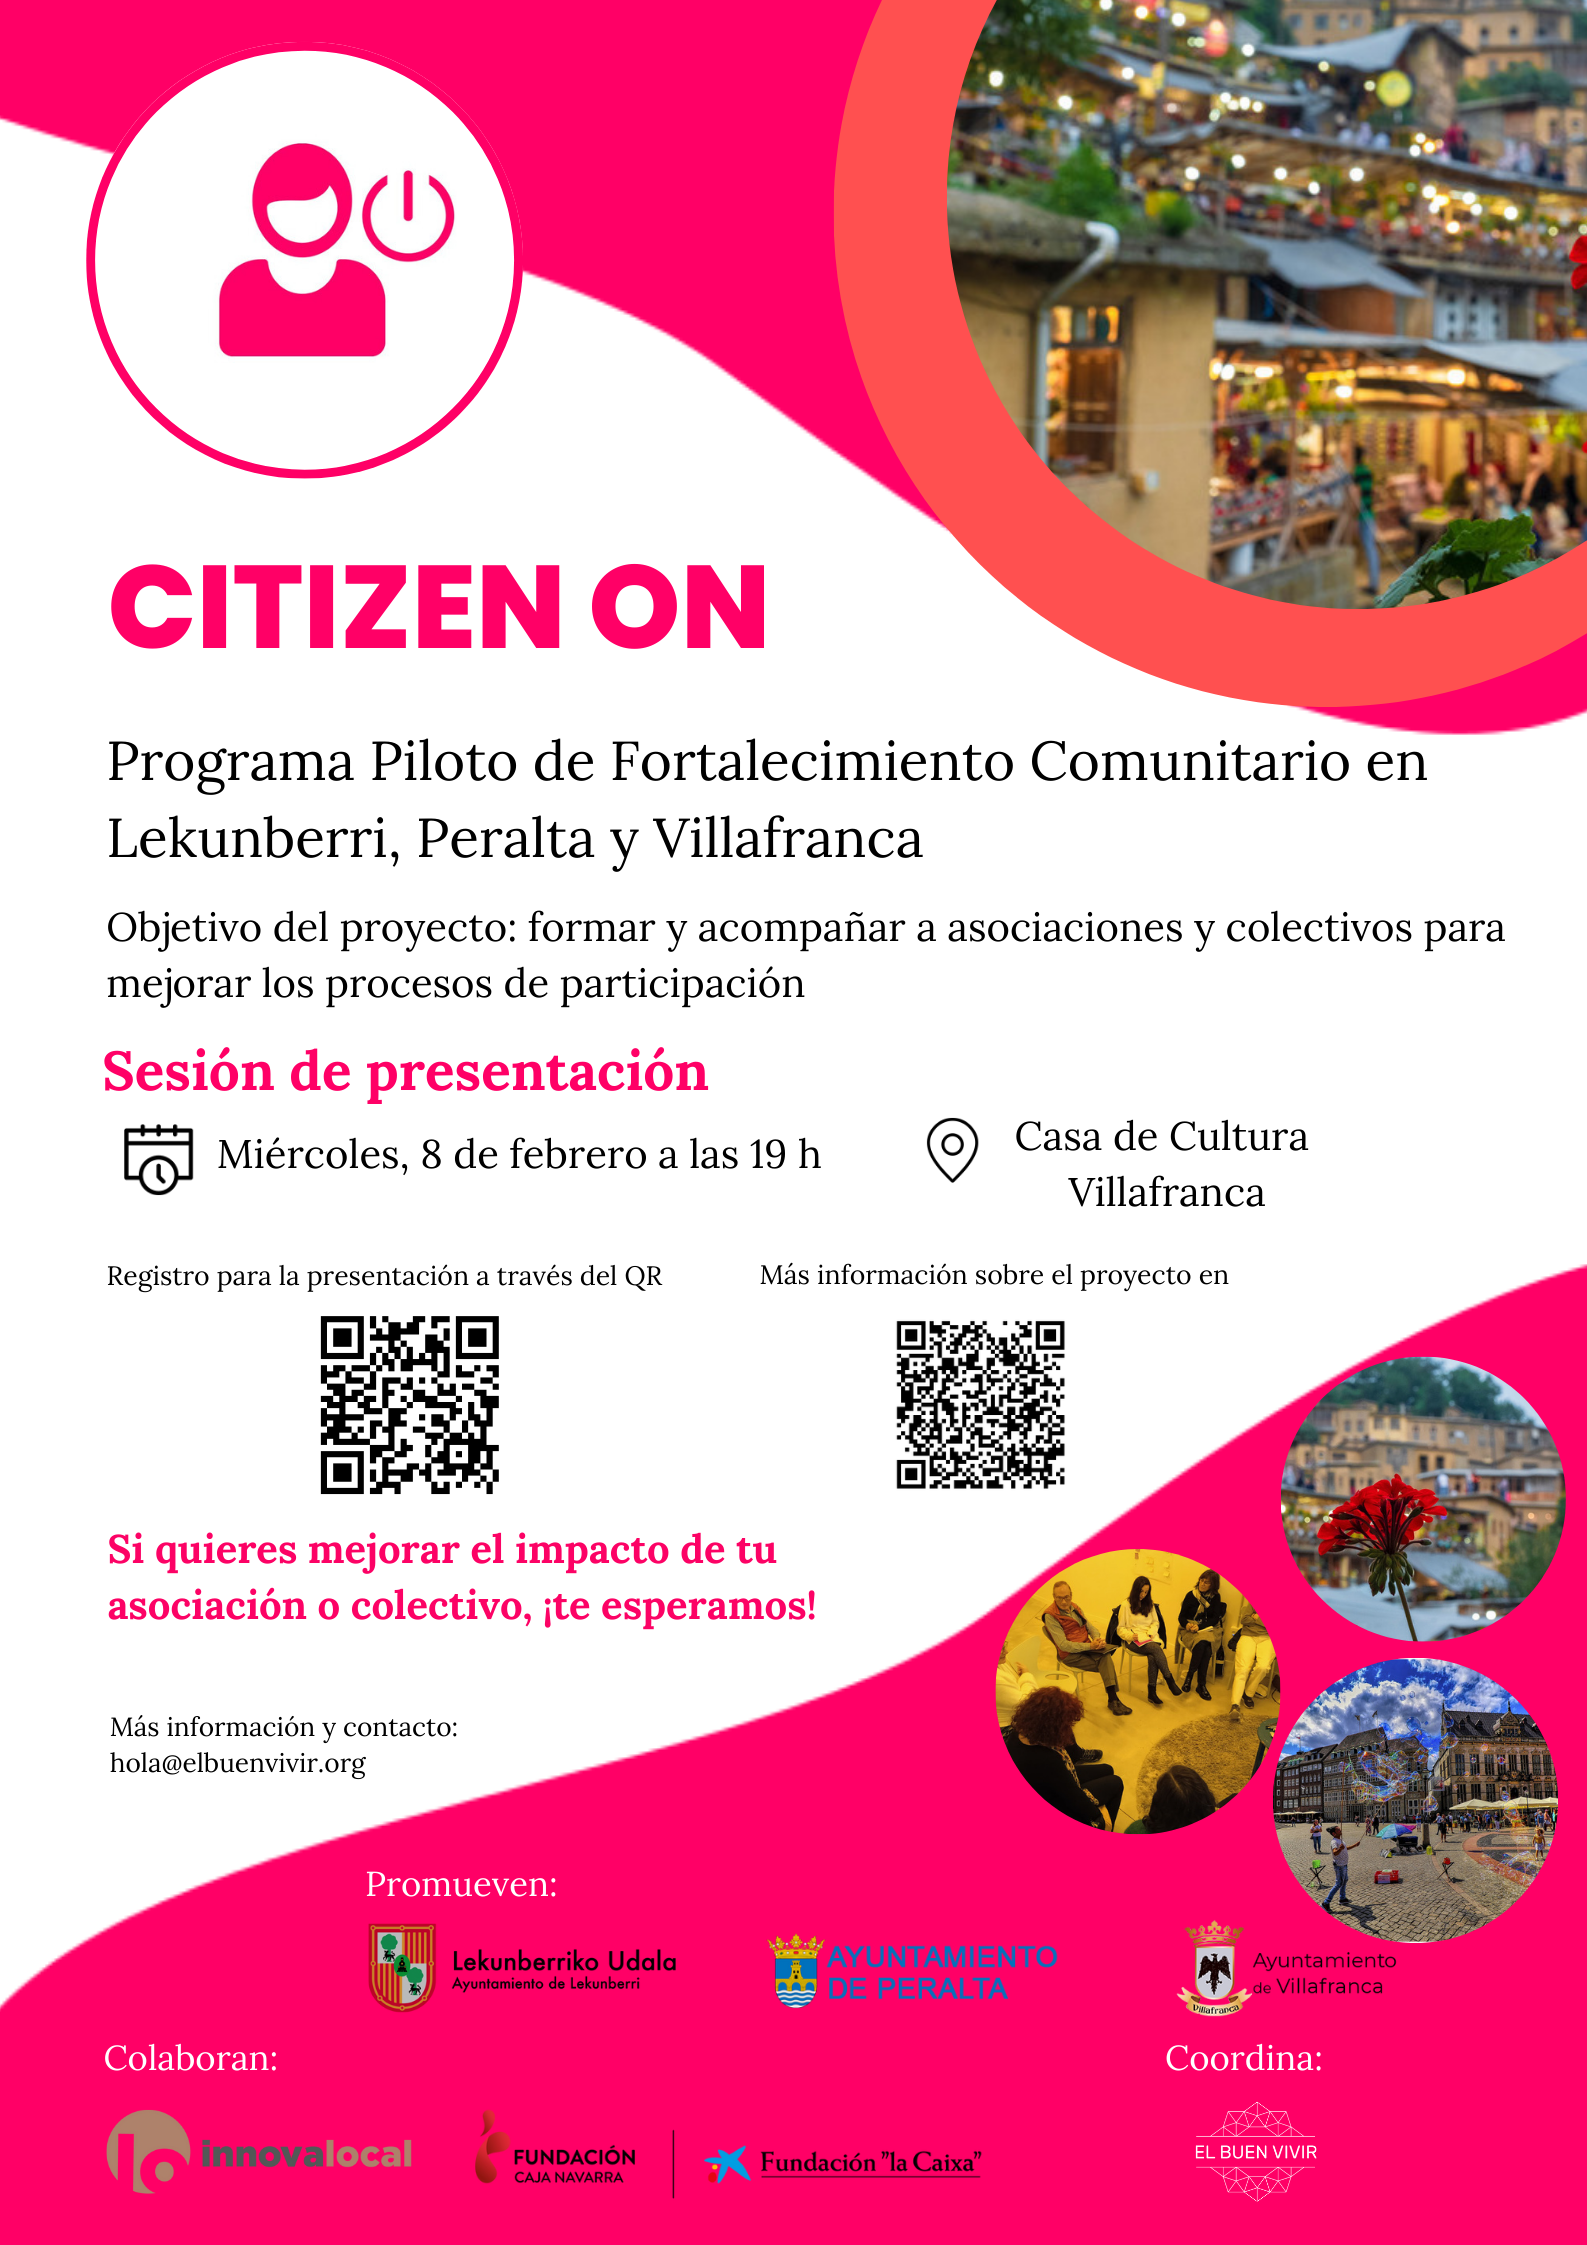 CITIZEN ON – Programa Piloto de Fortalecimiento Comunitario de Lekunberri, Peralta y Villafranca.